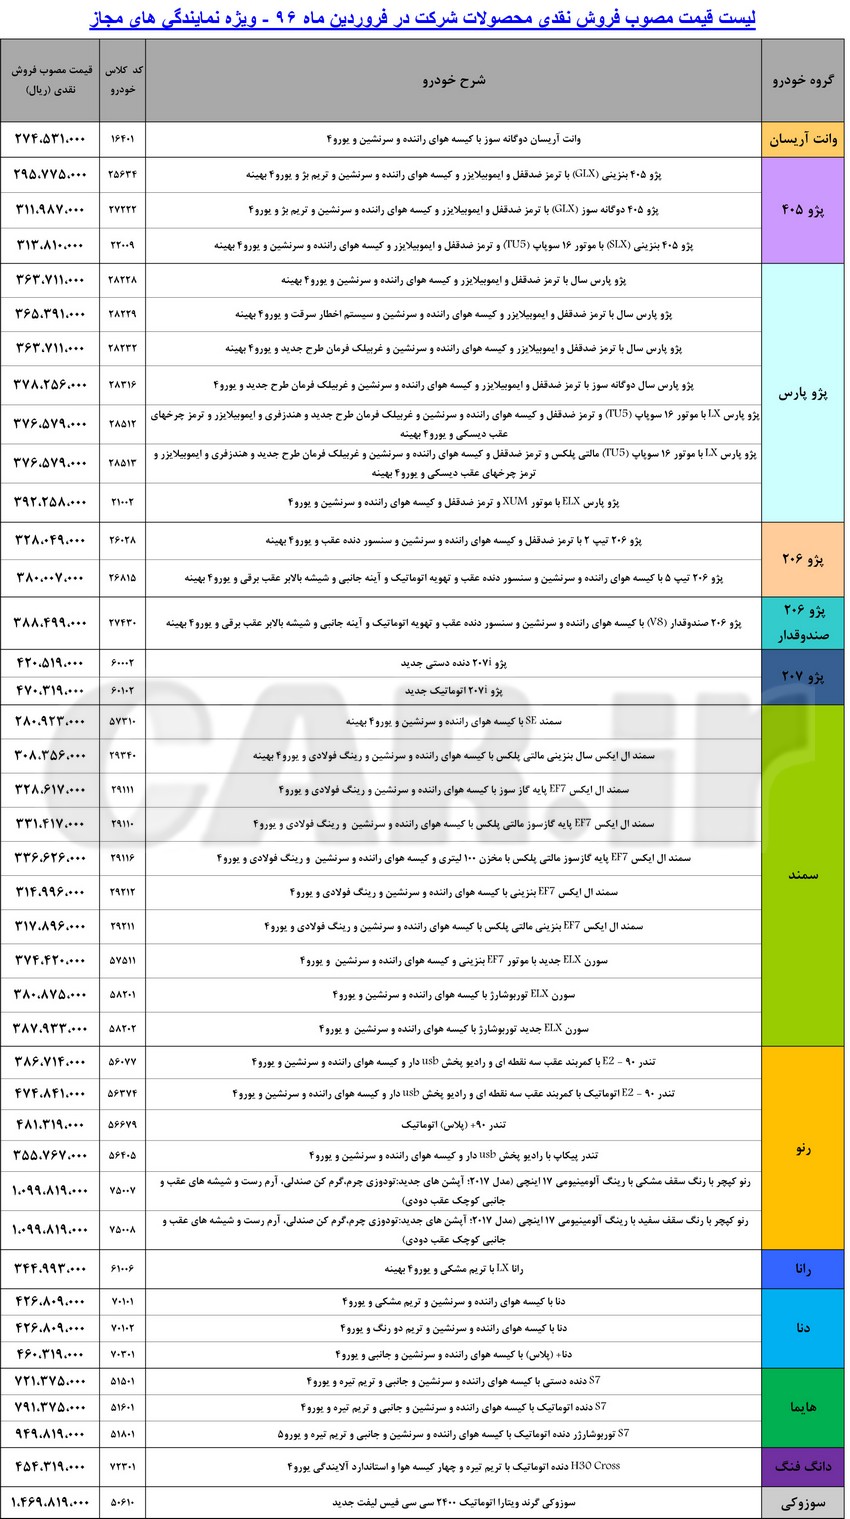  لیست قیمت محصولات ایران خودرو در فروردین ماه 96 